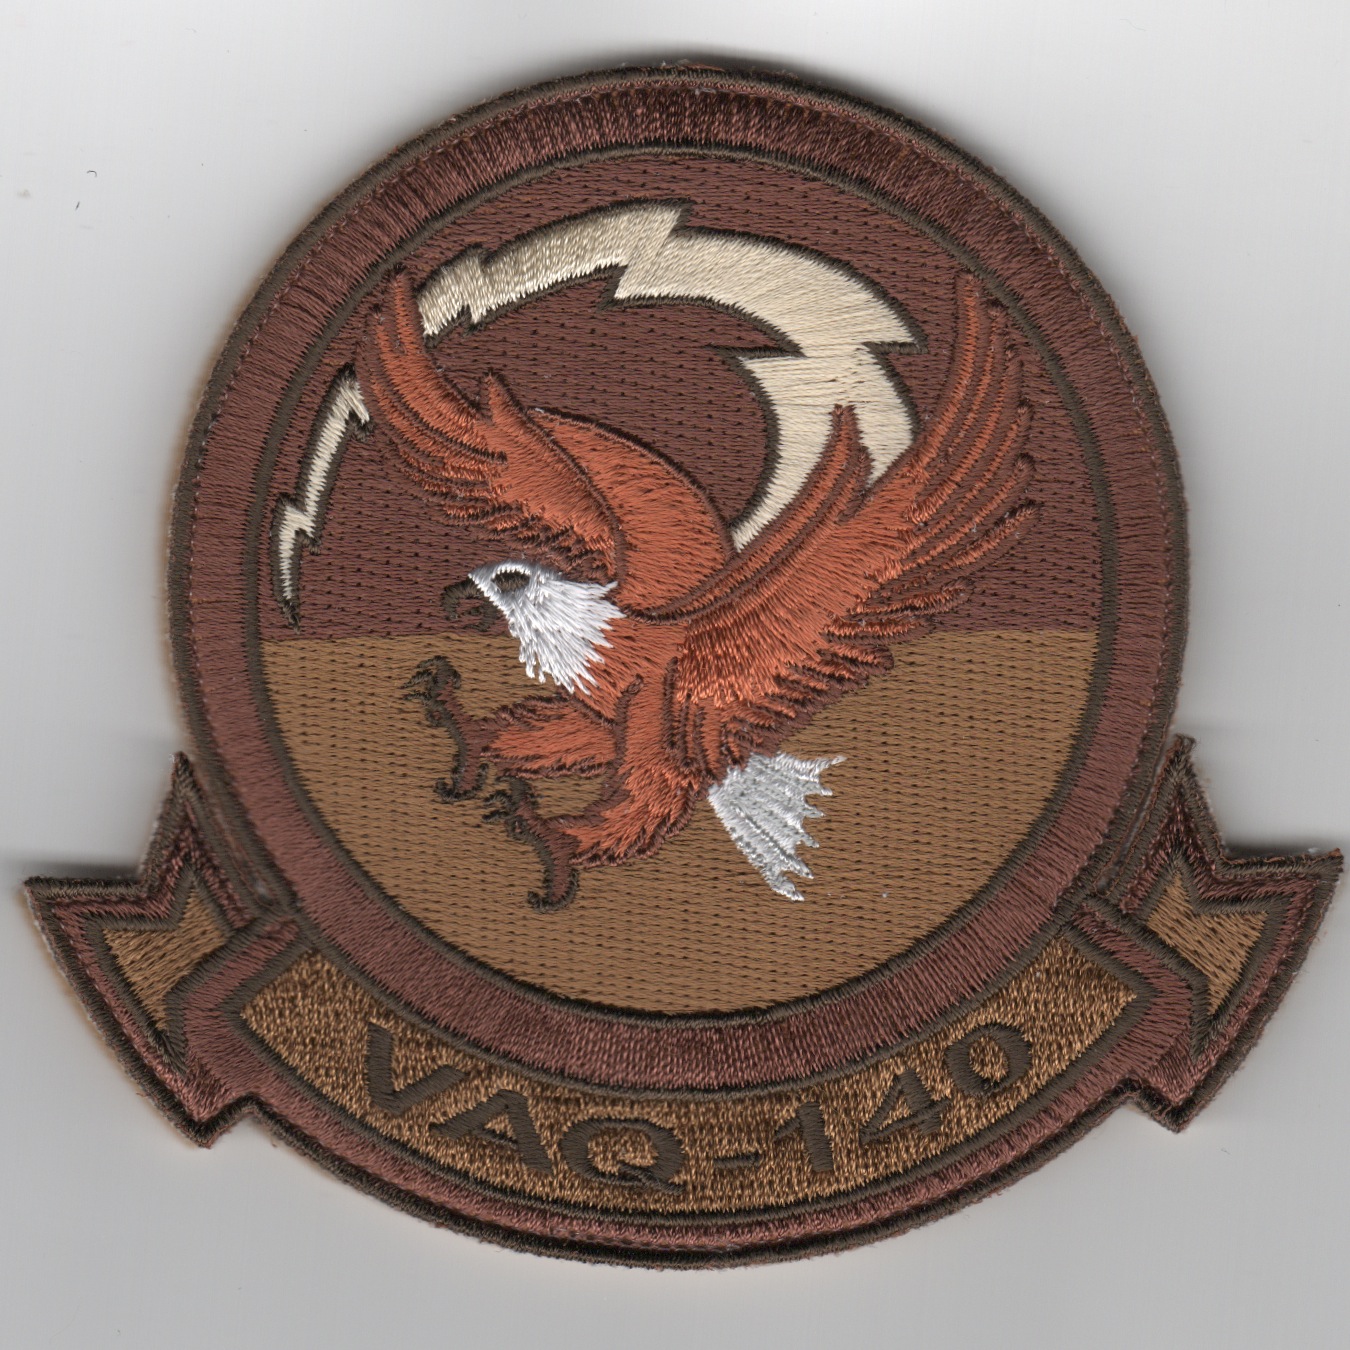 VAQ-140 Squadron Patch (Des/V)